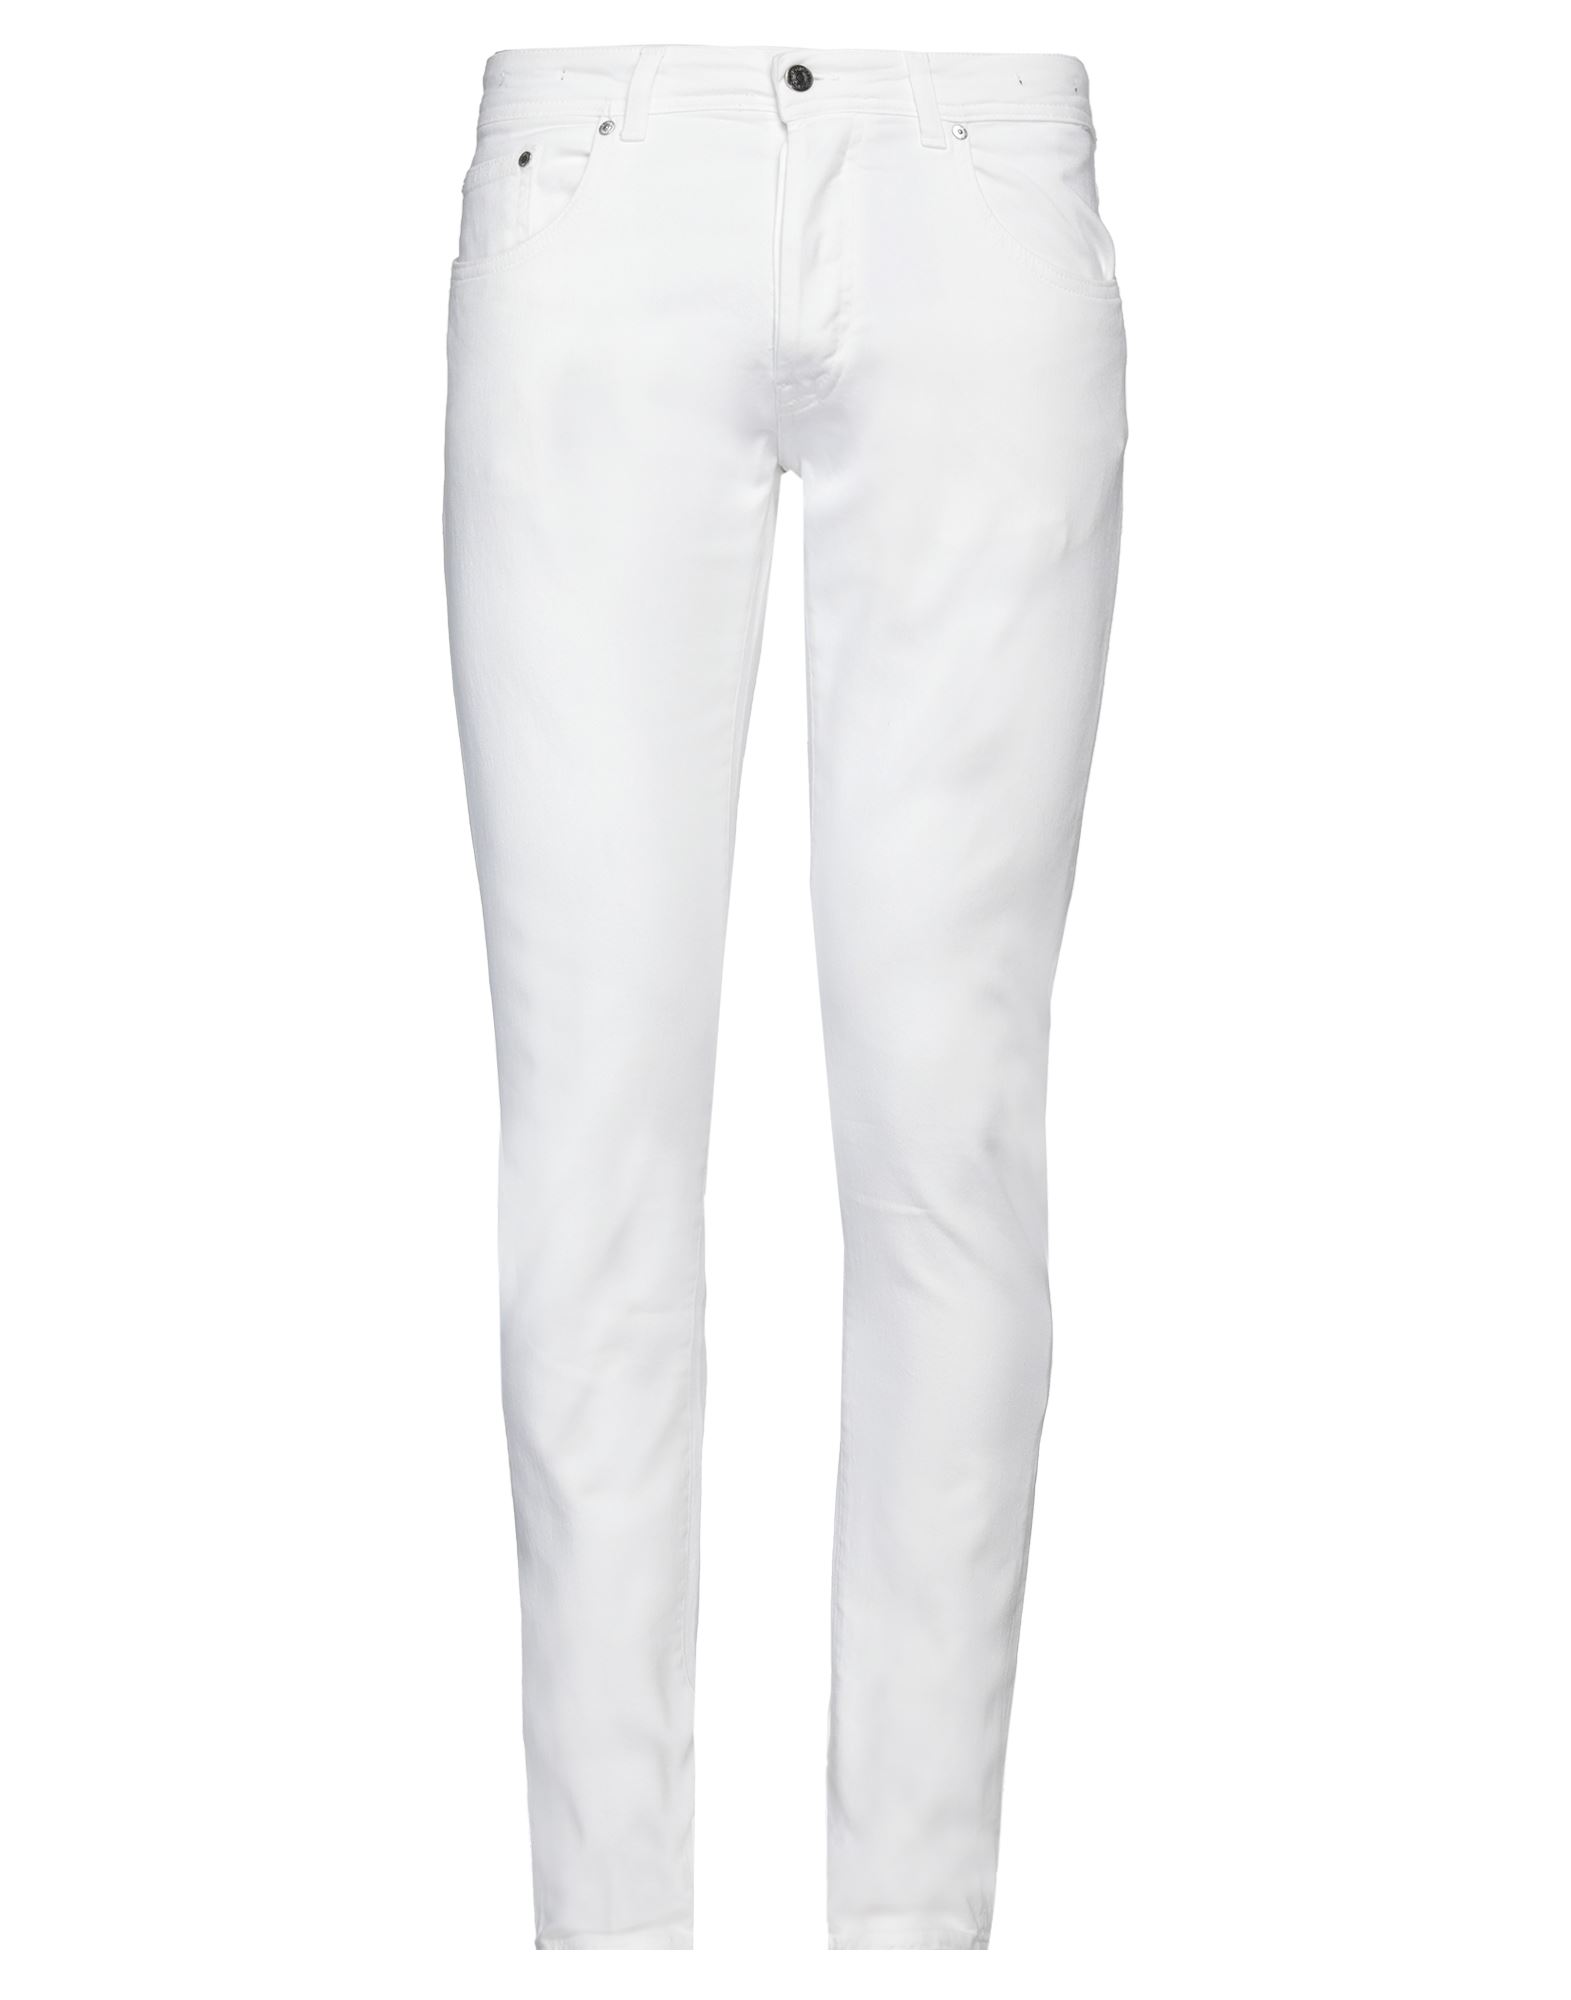 Shop Liu •jo Man Man Jeans White Size 30 Cotton, Elastane